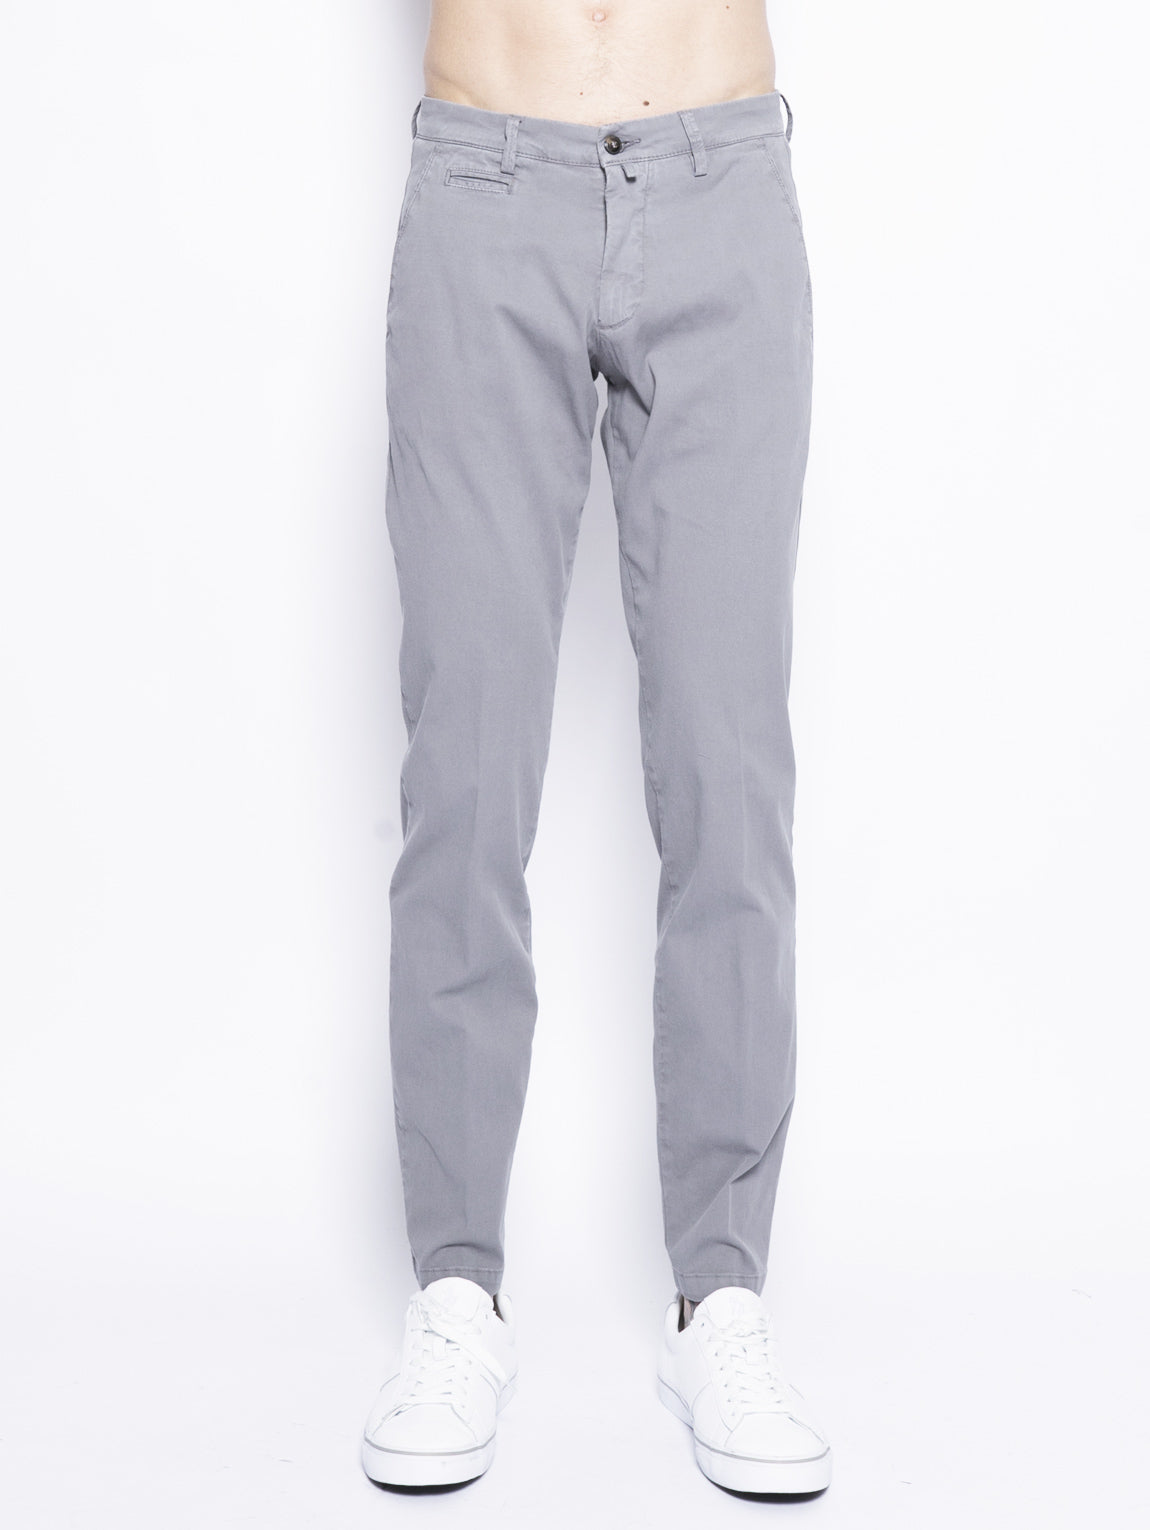 BRIGLIA 1949-Pantalone Chino in Tessuto Elasticizzato Grigio-TRYME Shop